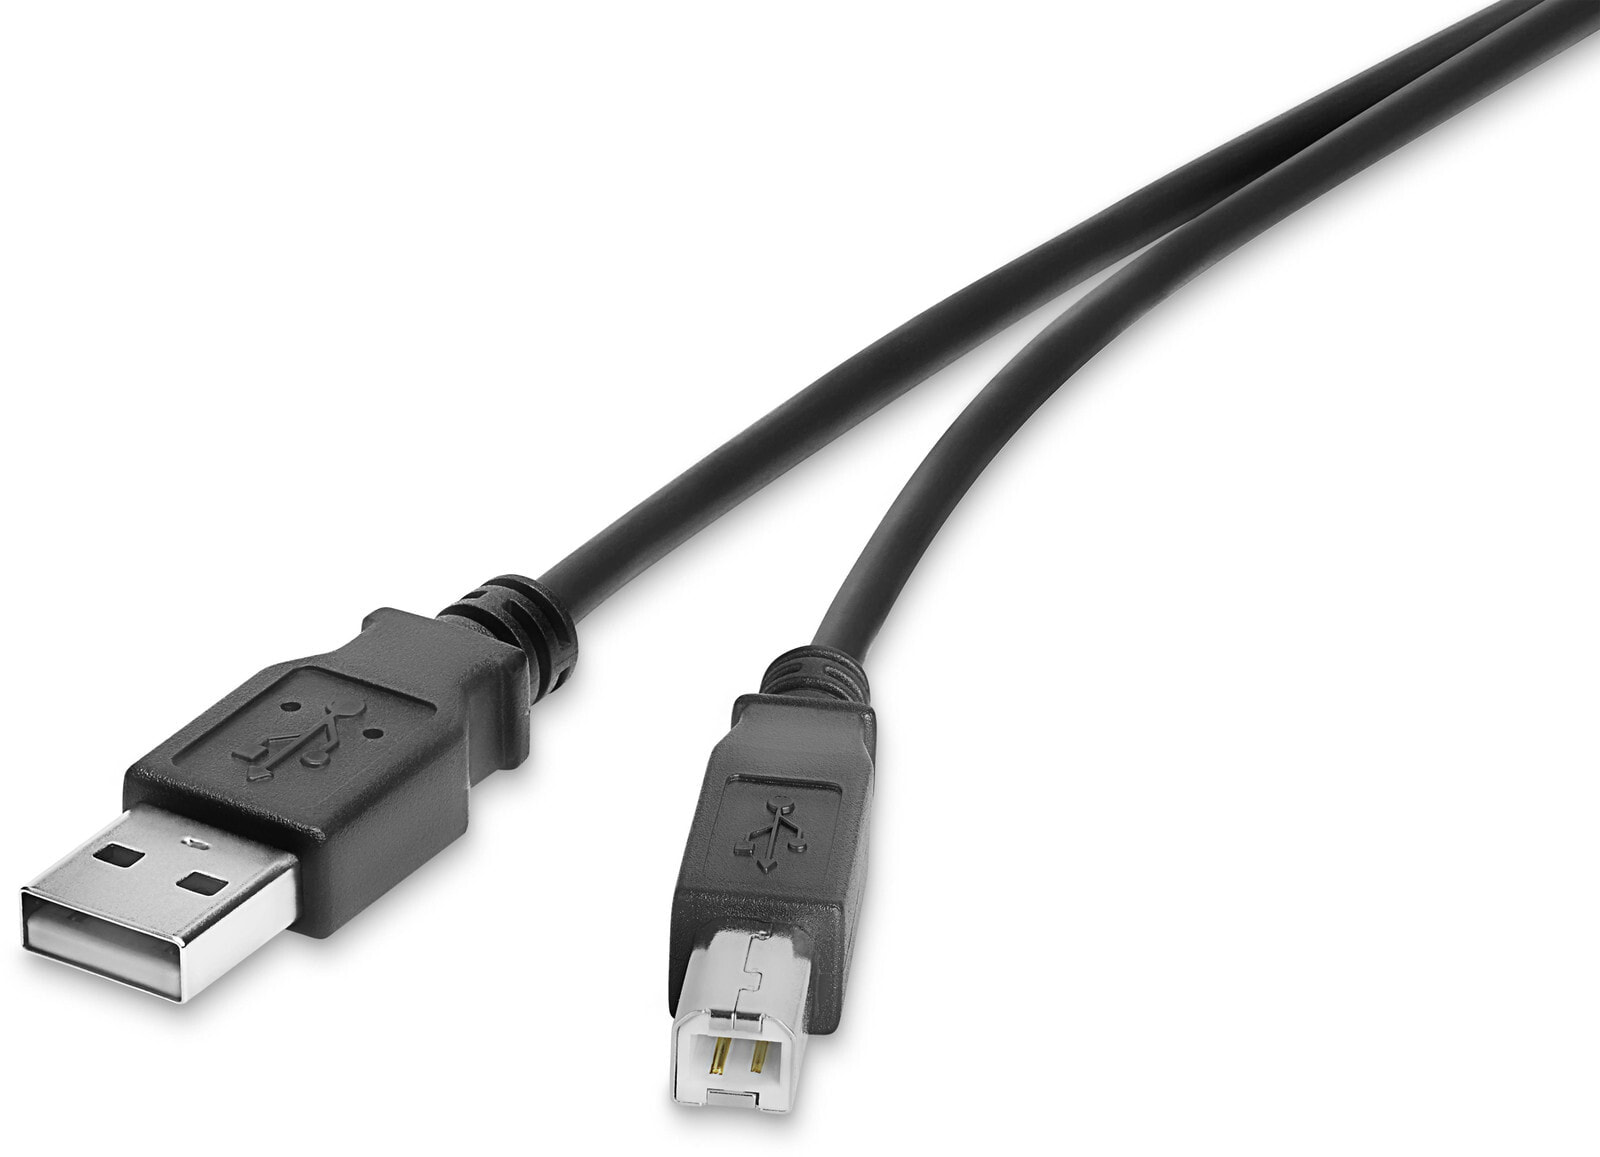 RF-4463070, 1 m, USB A, USB B, USB 2.0, 480 Mbit/s, Black